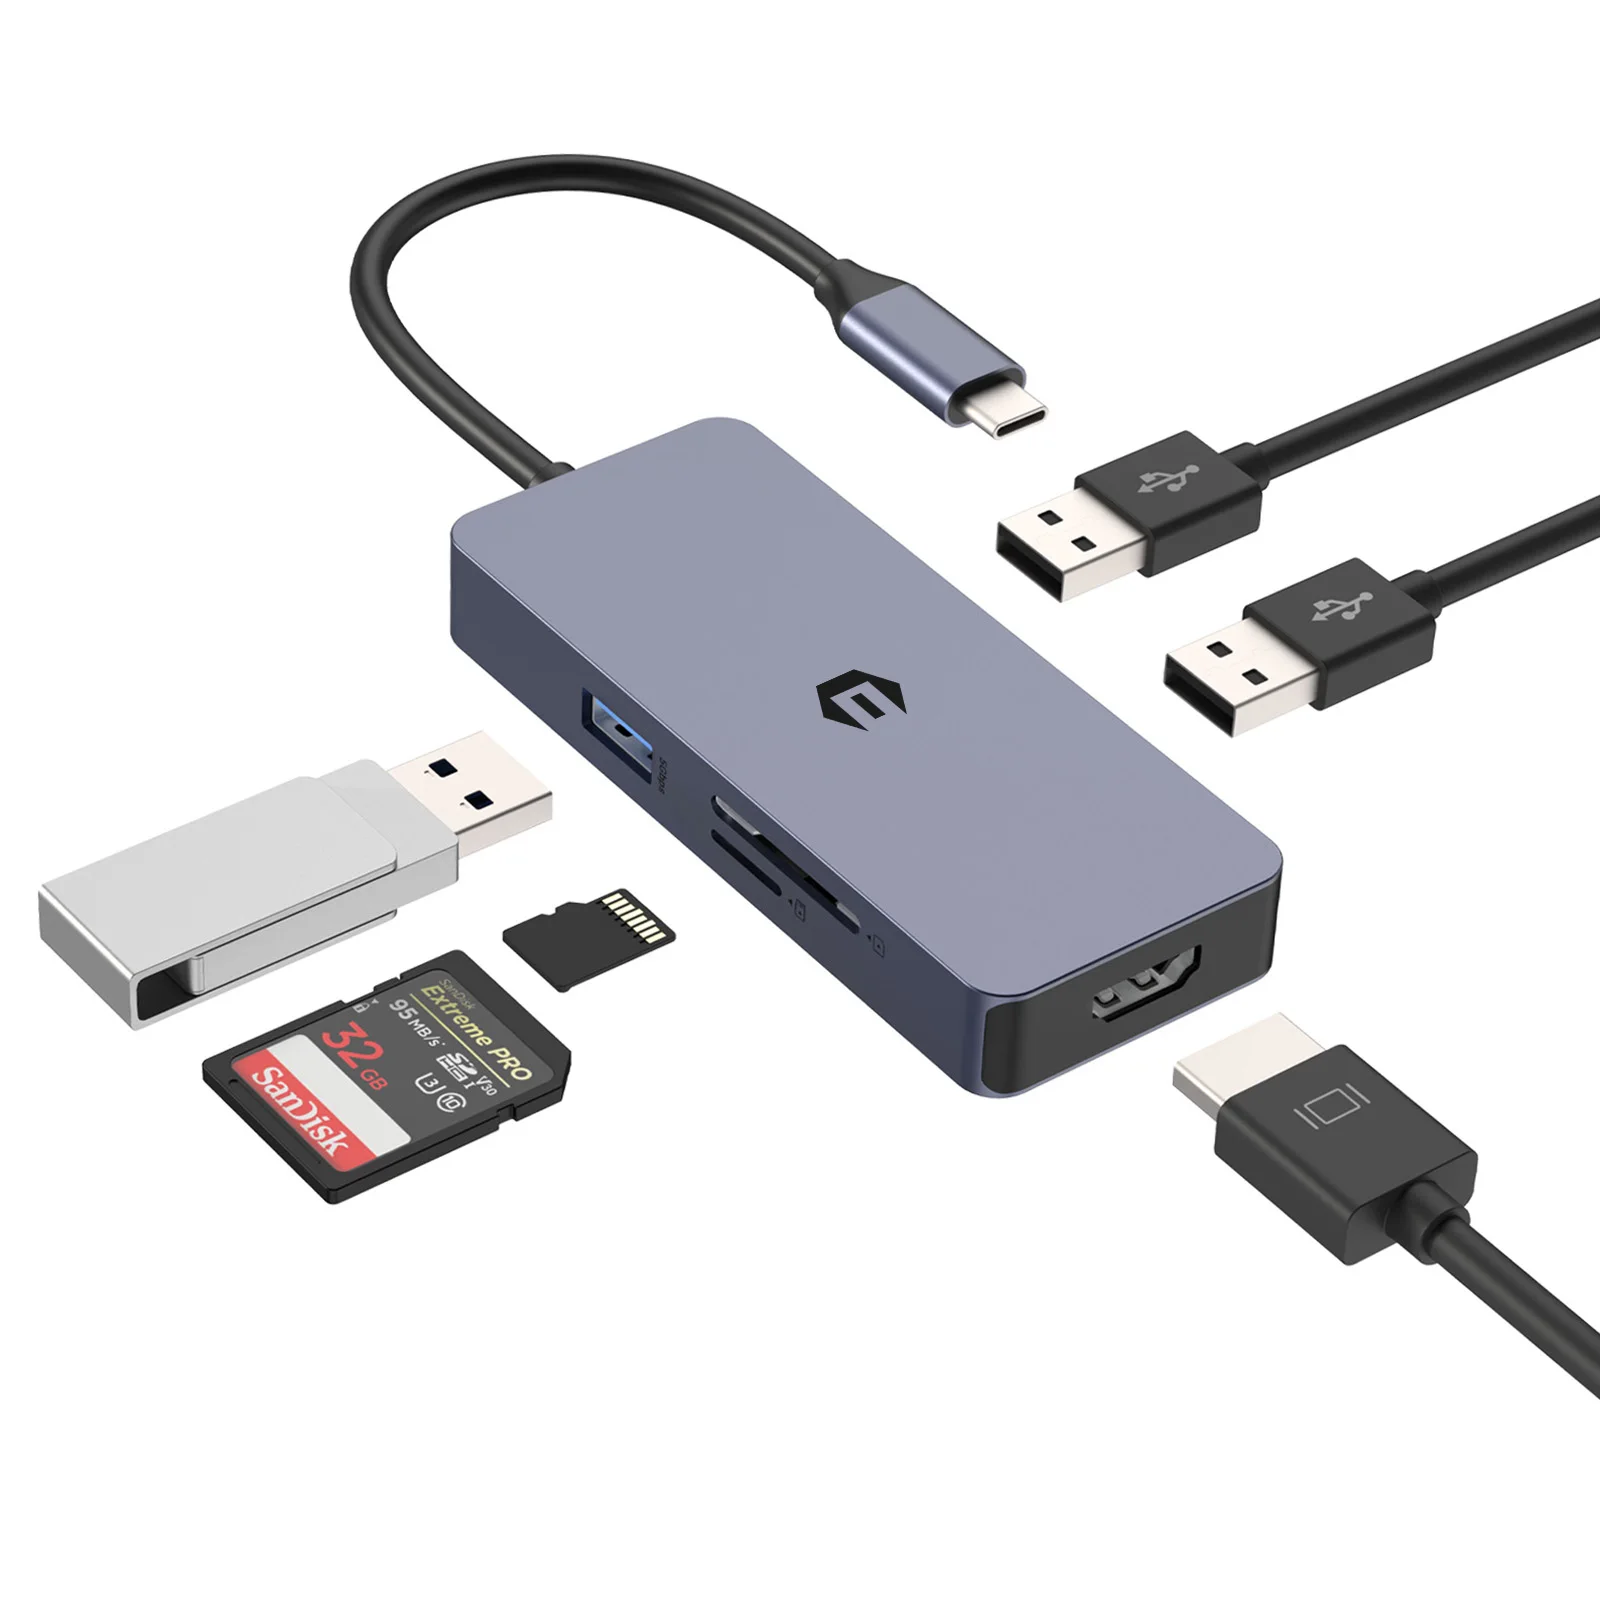 КОНЦЕНТРАТОР USB C, Алюминиевый Многопортовый адаптер USB C 6 в 1 с поддержкой 4K HDMI, USB 3.0, 2 * USB 2.0, SD / TF для MacBook, Surface Pro/G